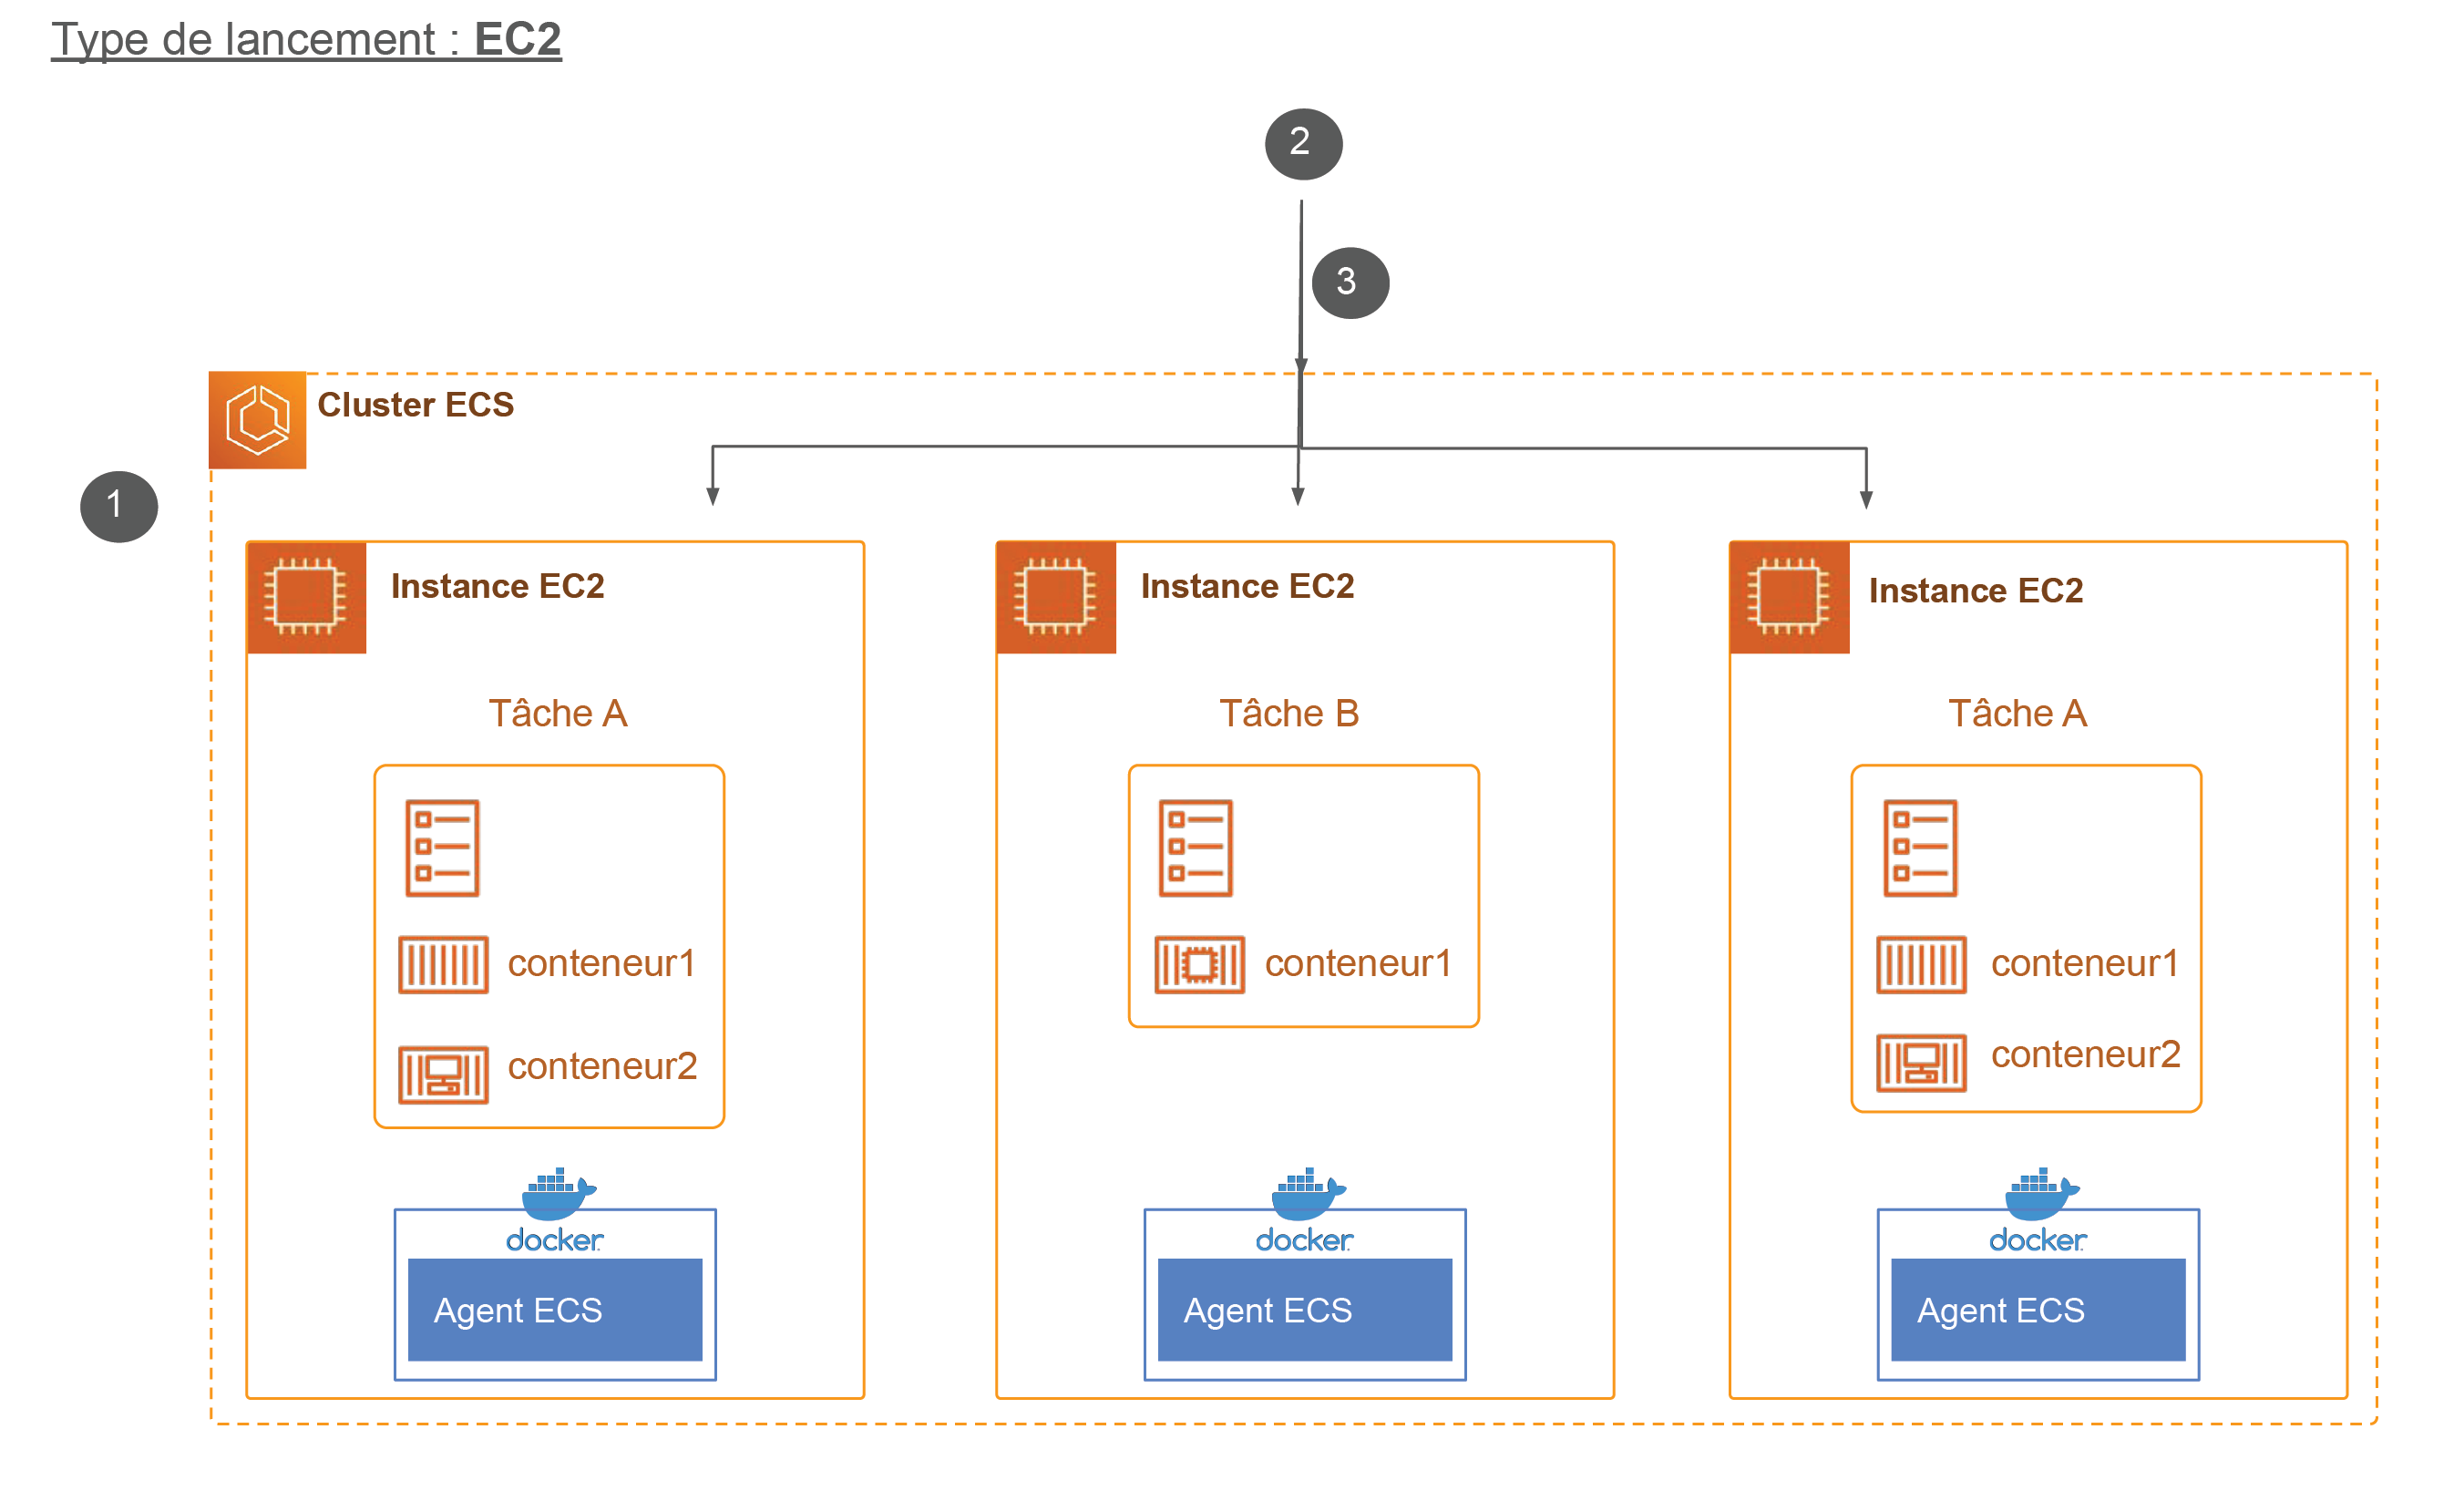 Schéma de fonctionnement d’un cluster ECS avec un type de lancement EC2 avec 3 étapes